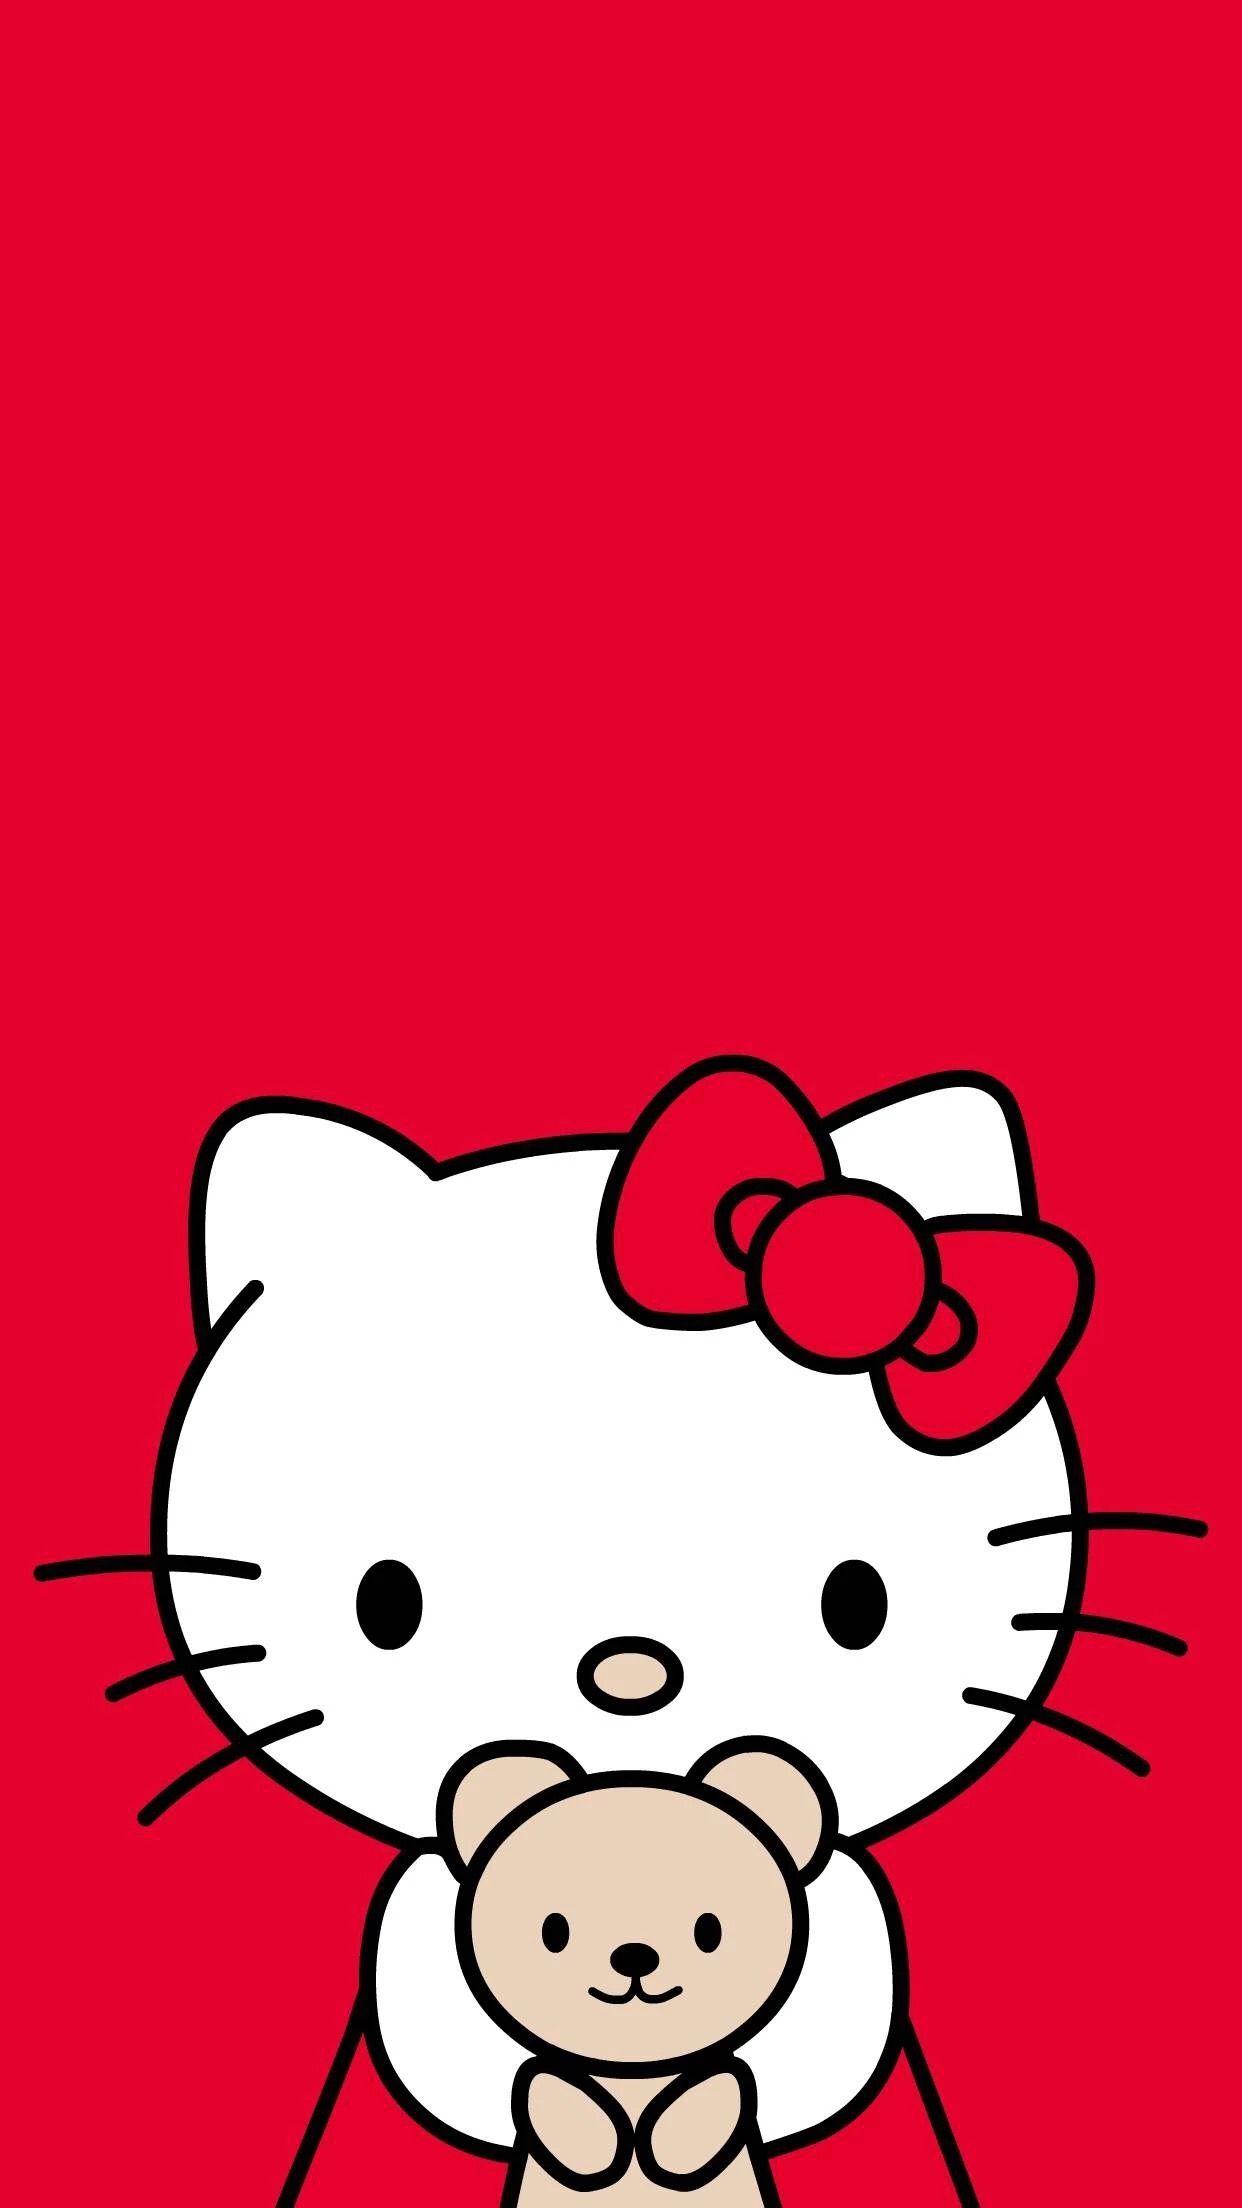 Hình nền Hello Kitty đỏ là một sự lựa chọn tuyệt vời cho những ai yêu màu sắc tươi sáng và nổi bật. Với hình nền này, bạn sẽ luôn tràn đầy năng lượng và sự hứng khởi.